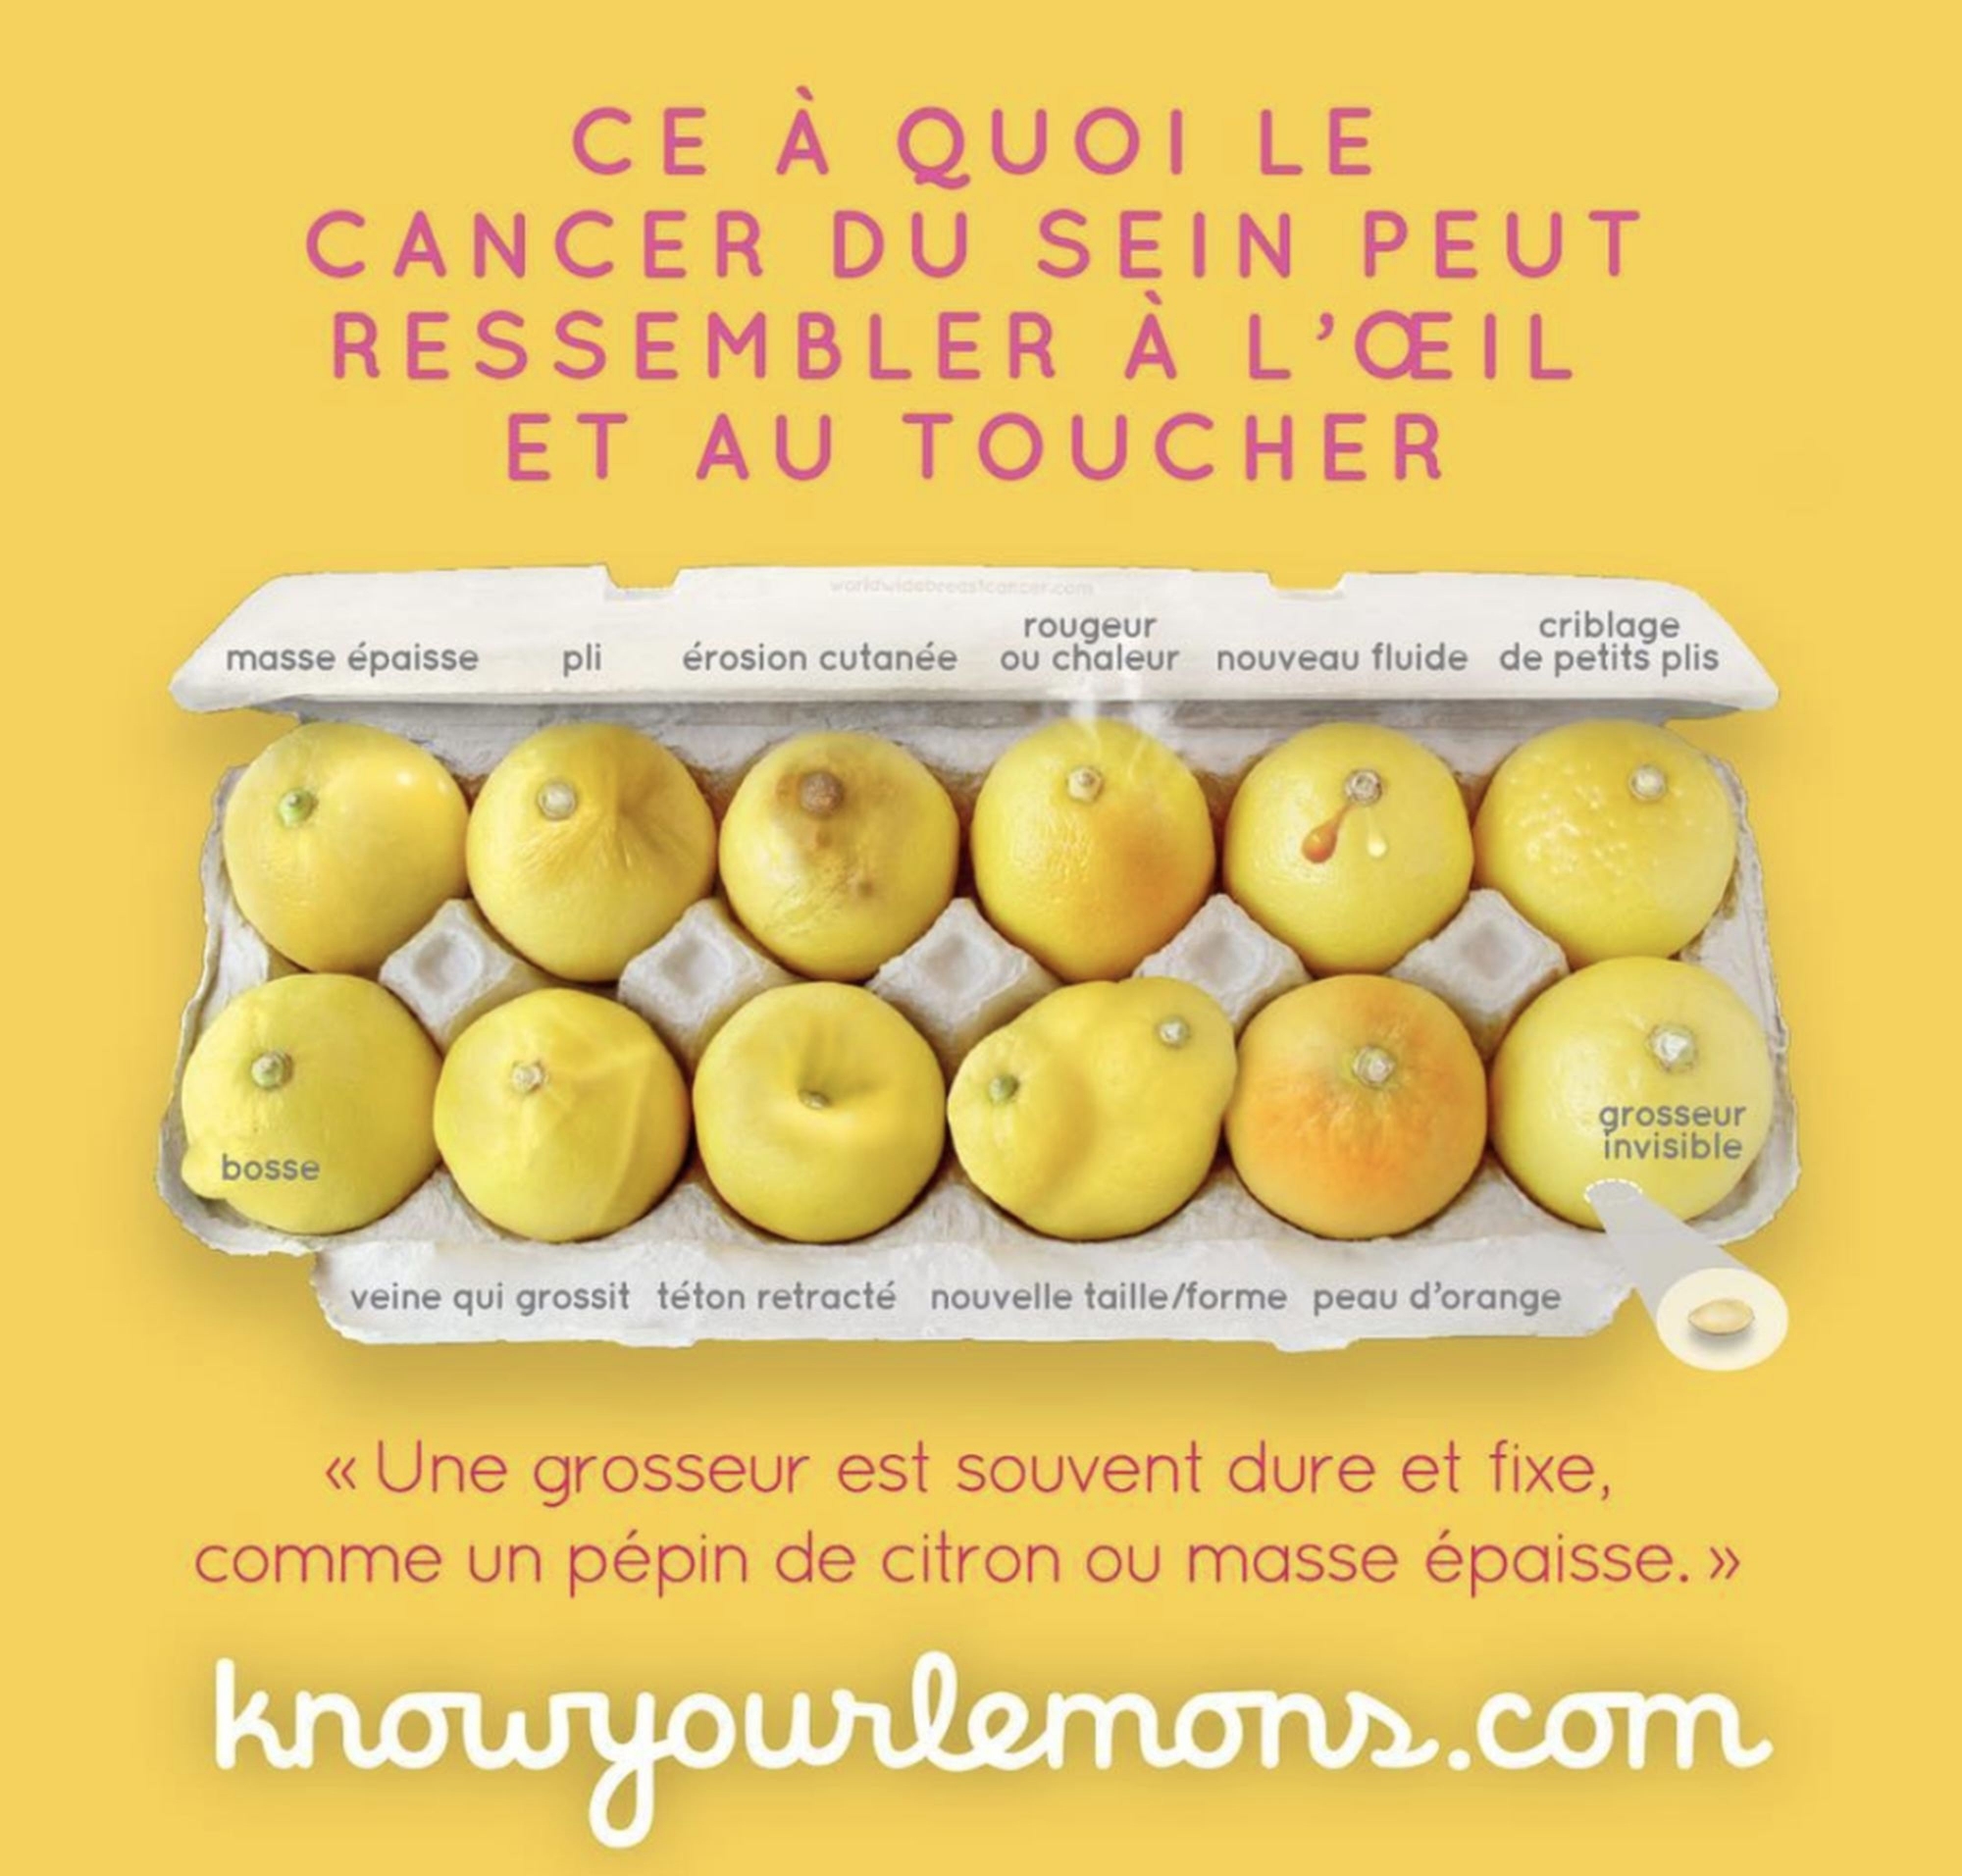 La campagne "Know your lemons" avait fait sensation en indiquant, avec des fruits, les signes qui peuvent annoncer un cancer du sein.